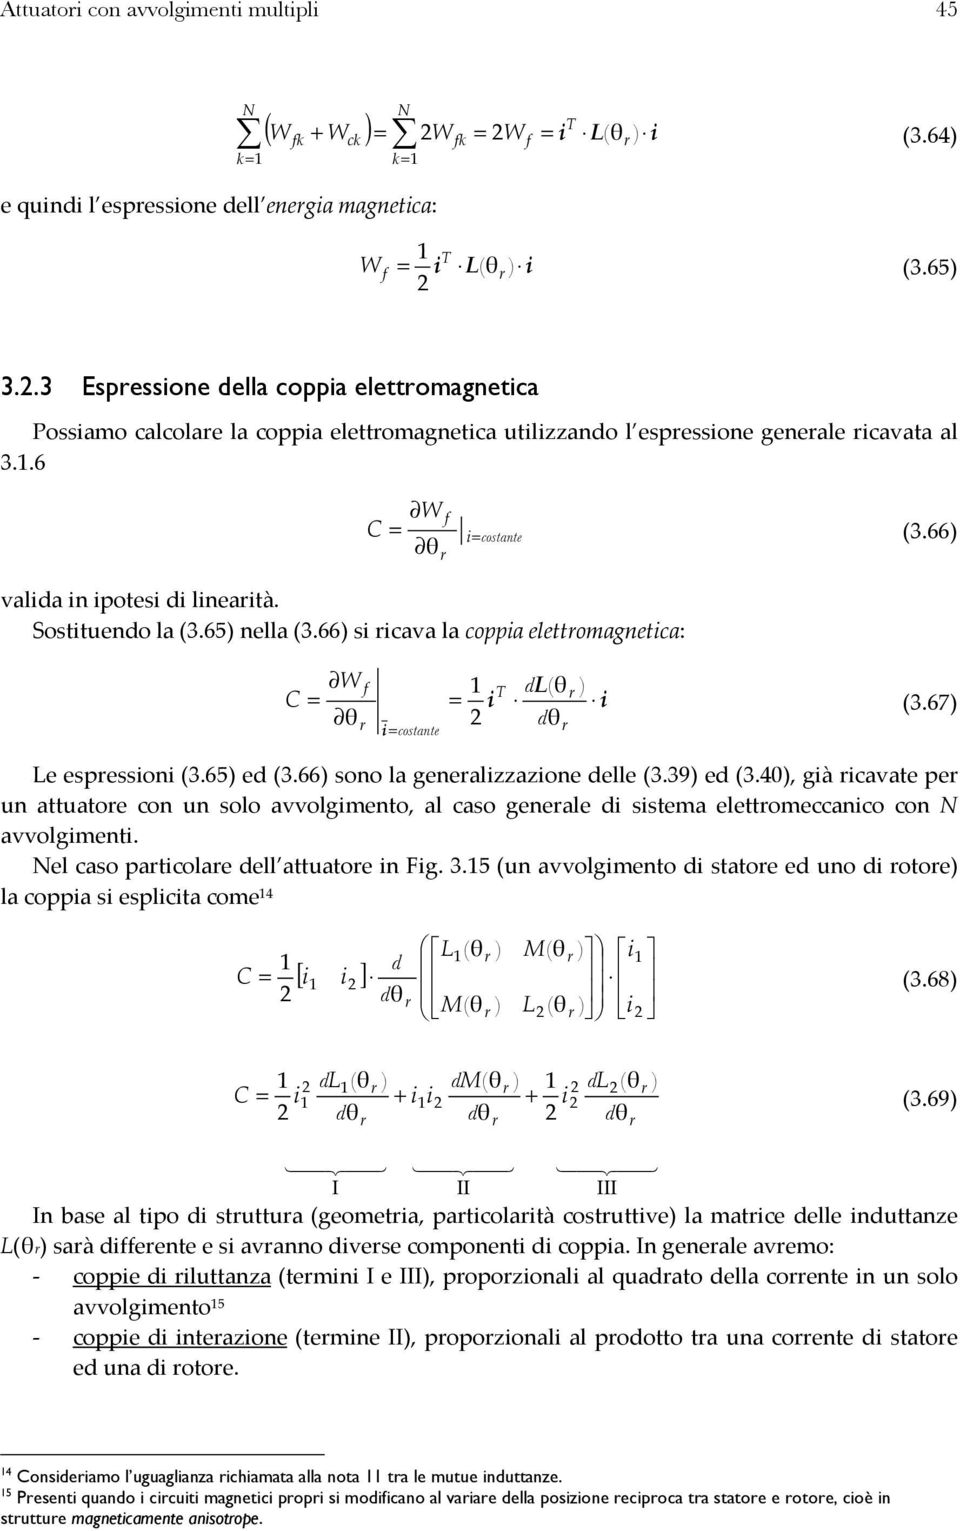 66 s cava la coppa eleomagneca: C W f L cosane T 3.67 Le espesson 3.65 e 3.66 sono la genealzzazone elle 3.39 e 3.